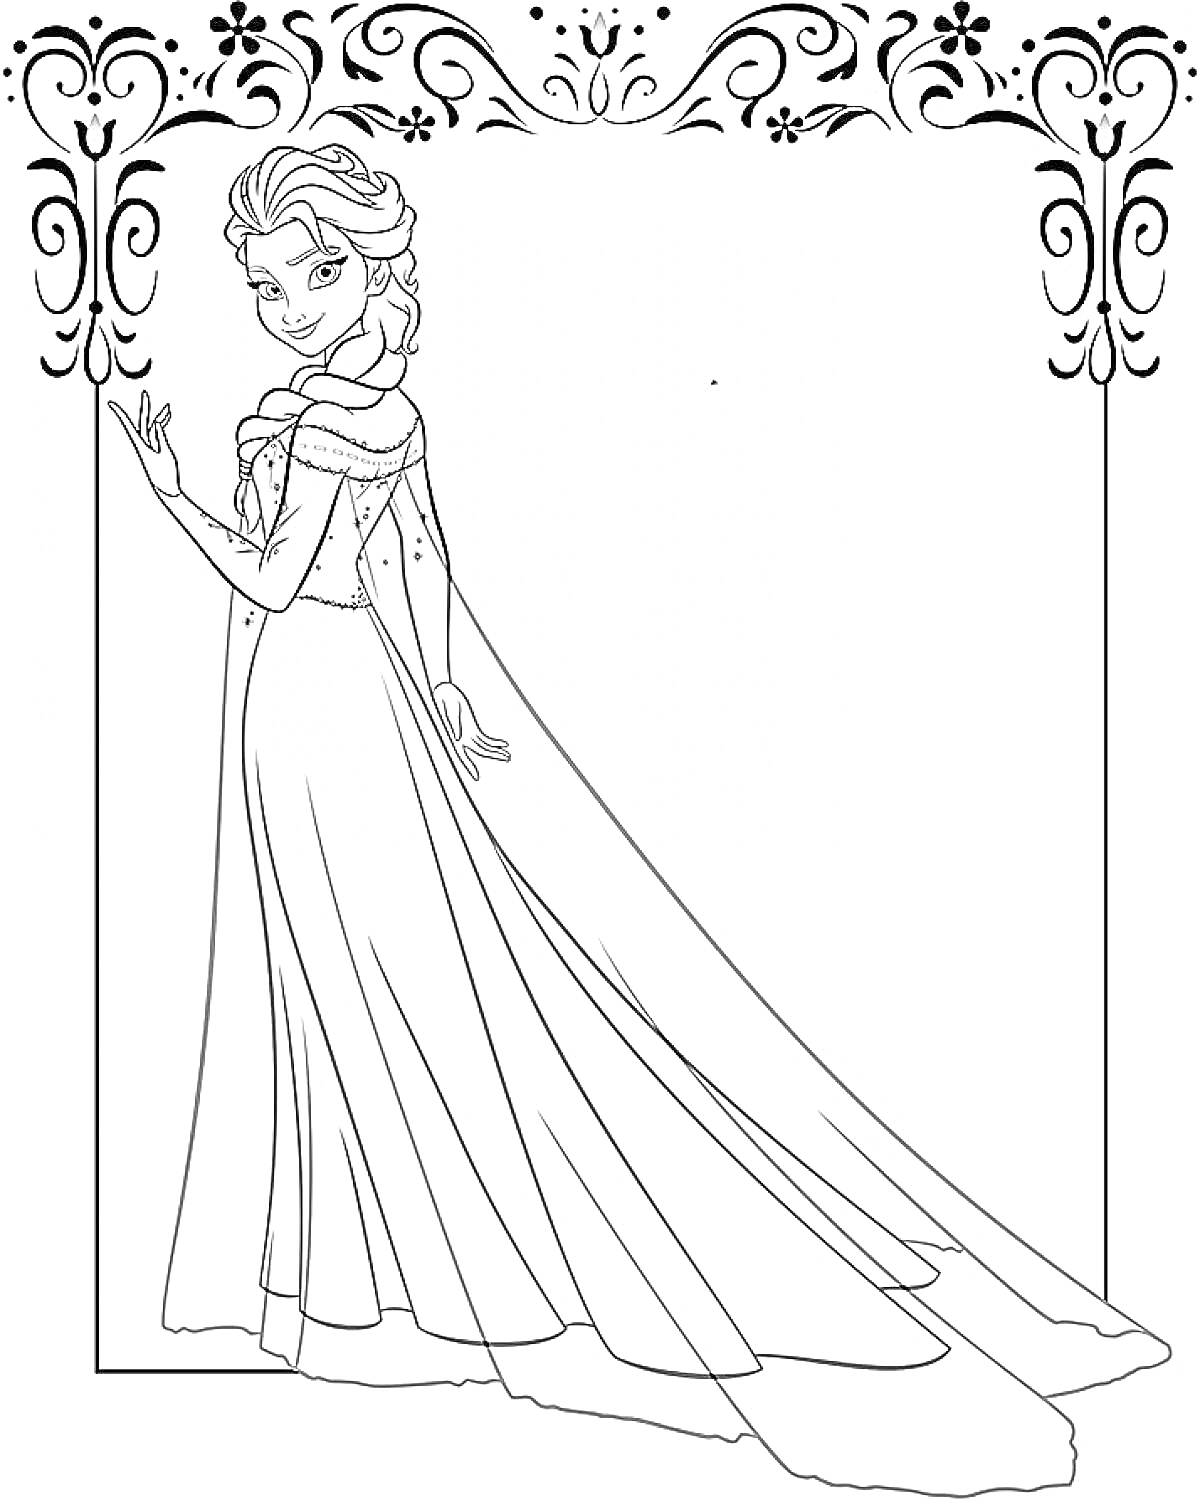 Раскраска Эльза в длинном платье с узорами в рамке